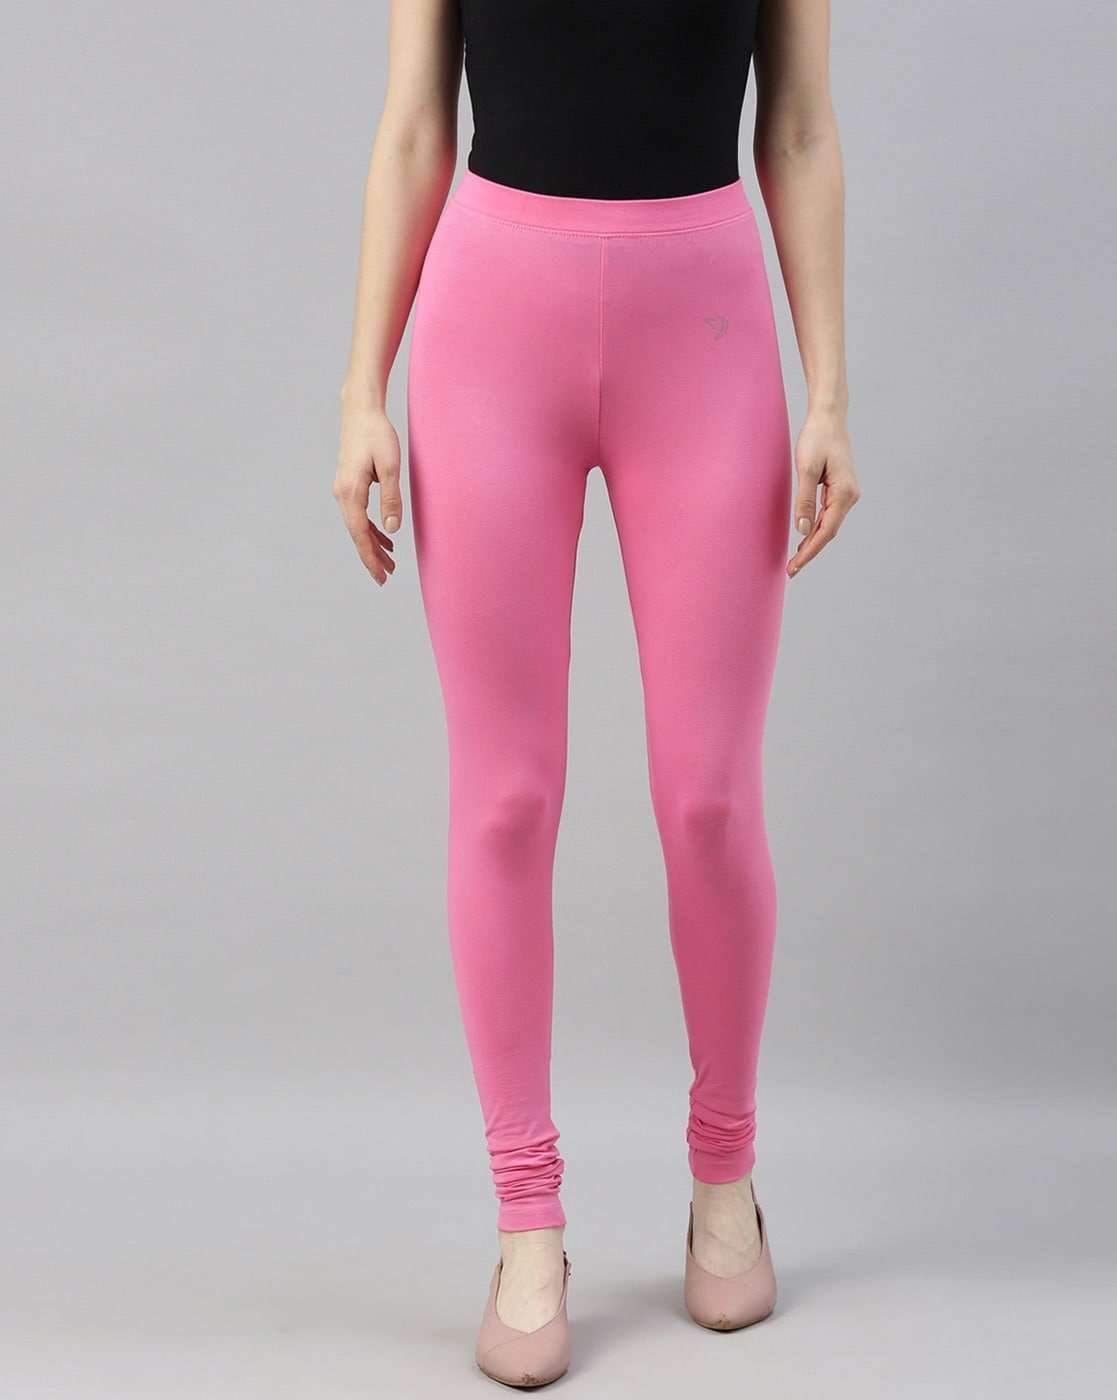 Buy Pink Leggings for Women by PERFORMAX Online